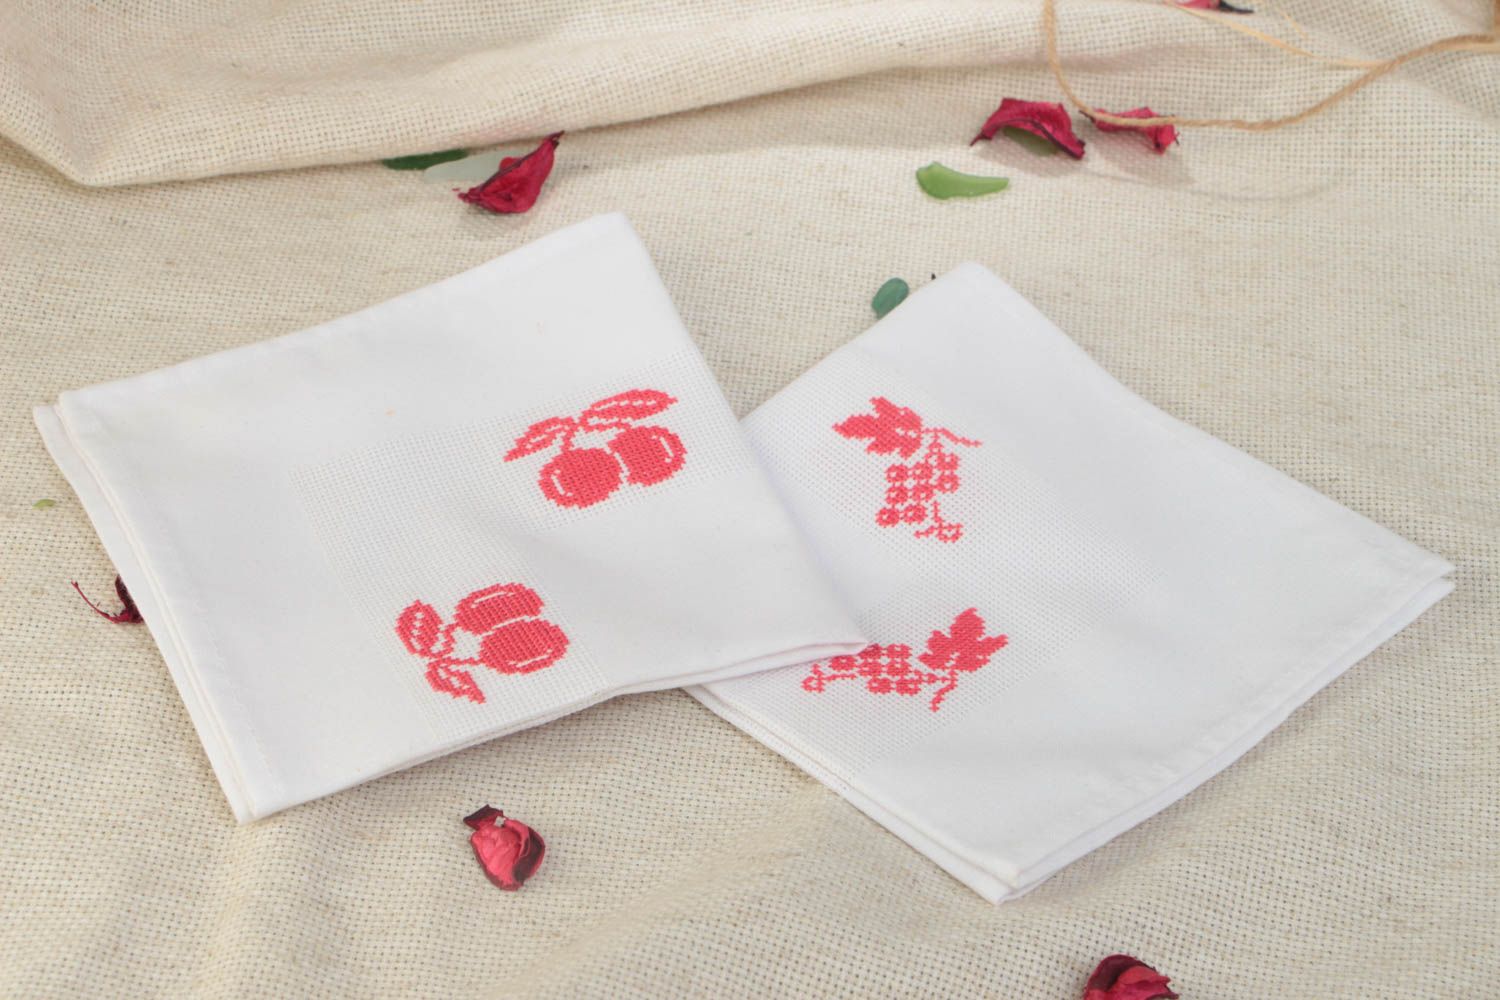 Deux serviettes de table brodées belles blanches motif rouge faites main Cerises photo 1